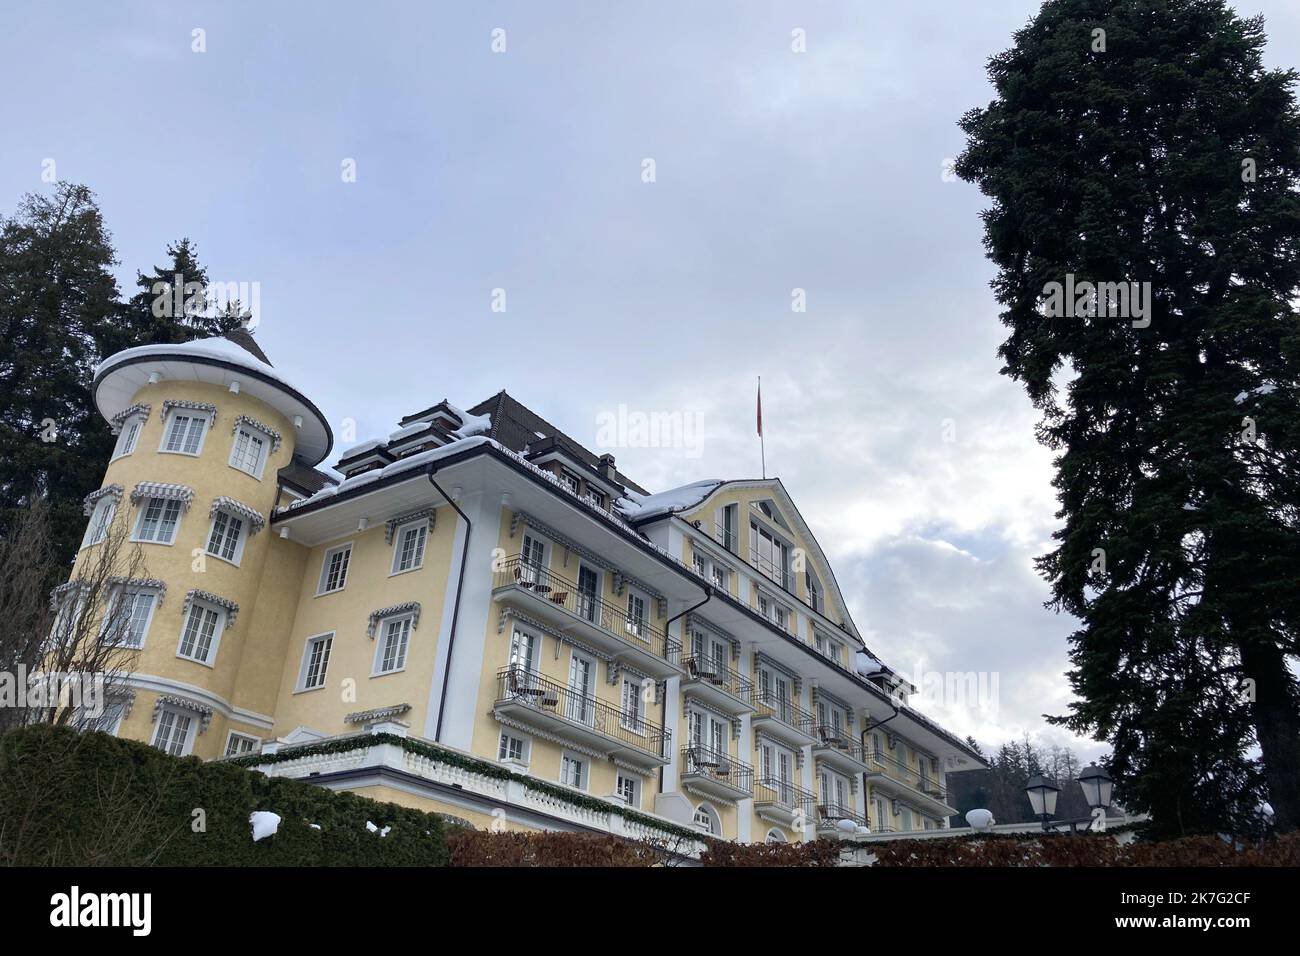 ©Francois Glories/MAXPPP - das 4* Grand Bellevue Hotel and Spa im berühmten Schweizer Alpenresort Gstaad. Viele Berühmtheiten übernachten hier schon seit Jahren (einschließlich der Königlichen Hoheit Caroline von Hannover). Schweiz Gstaad, Dezember 27 2021. Stockfoto